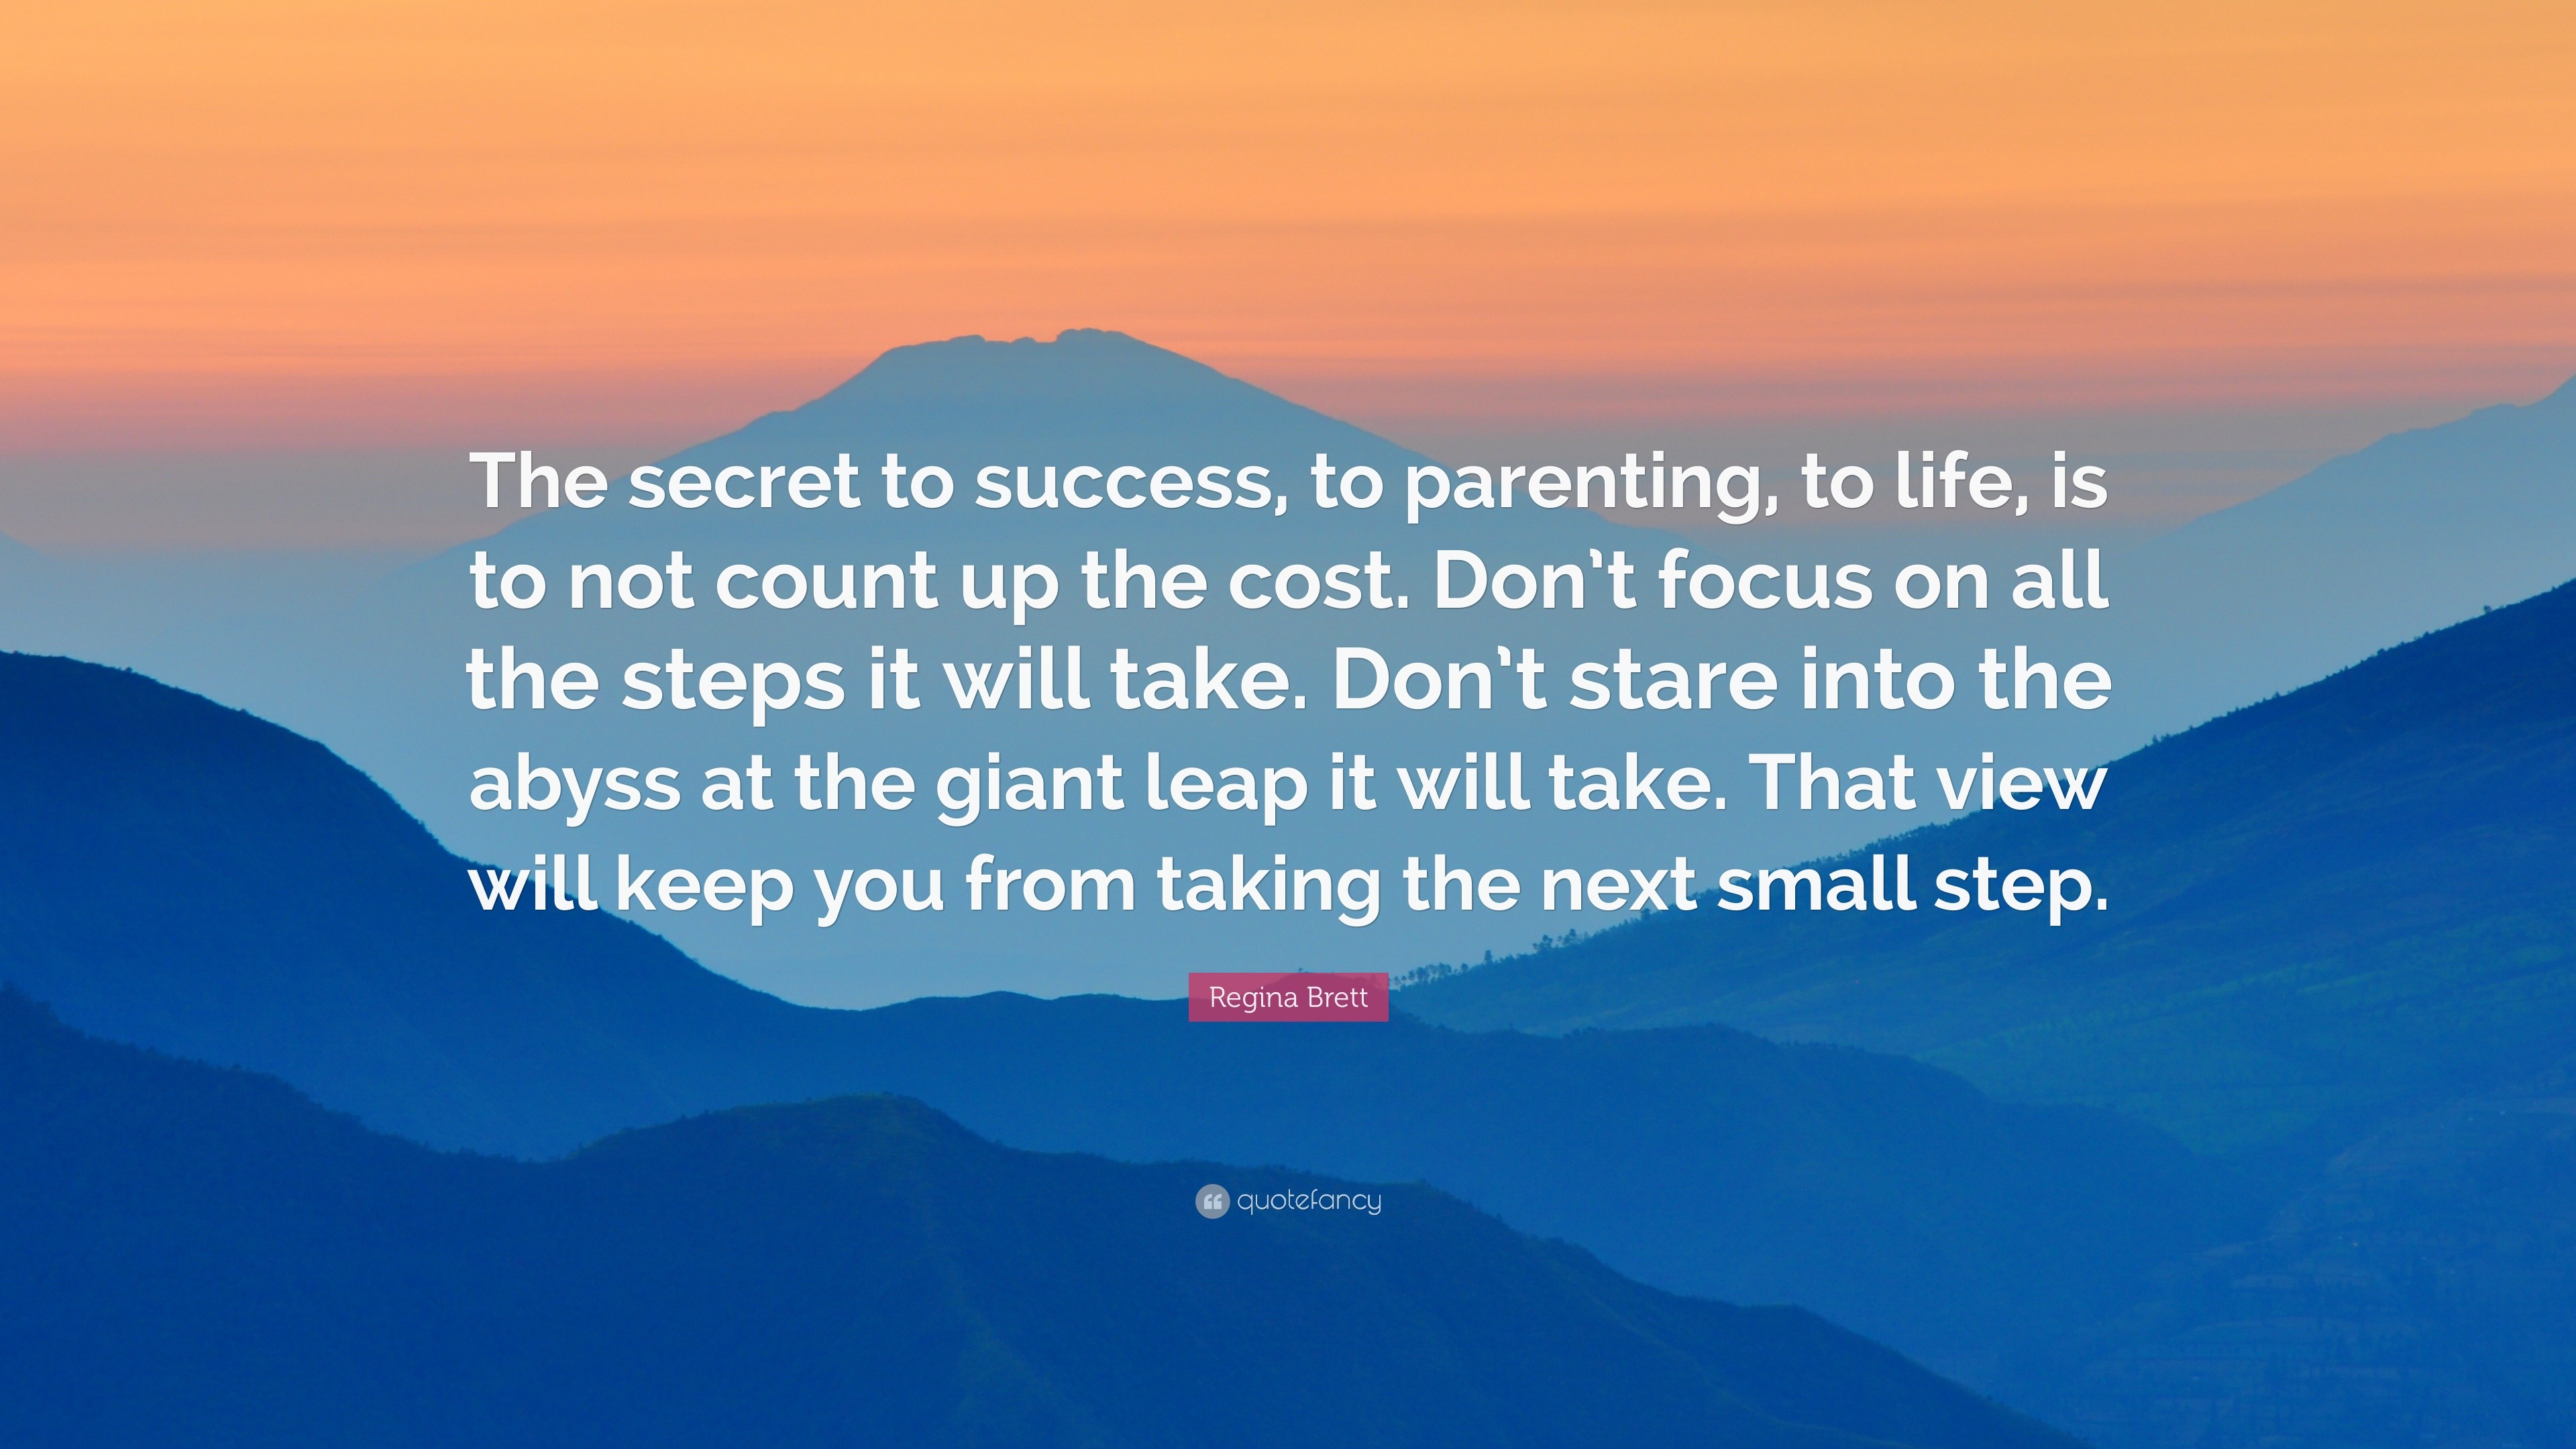 Regina Brett Quote: “The secret to success, to parenting, to life